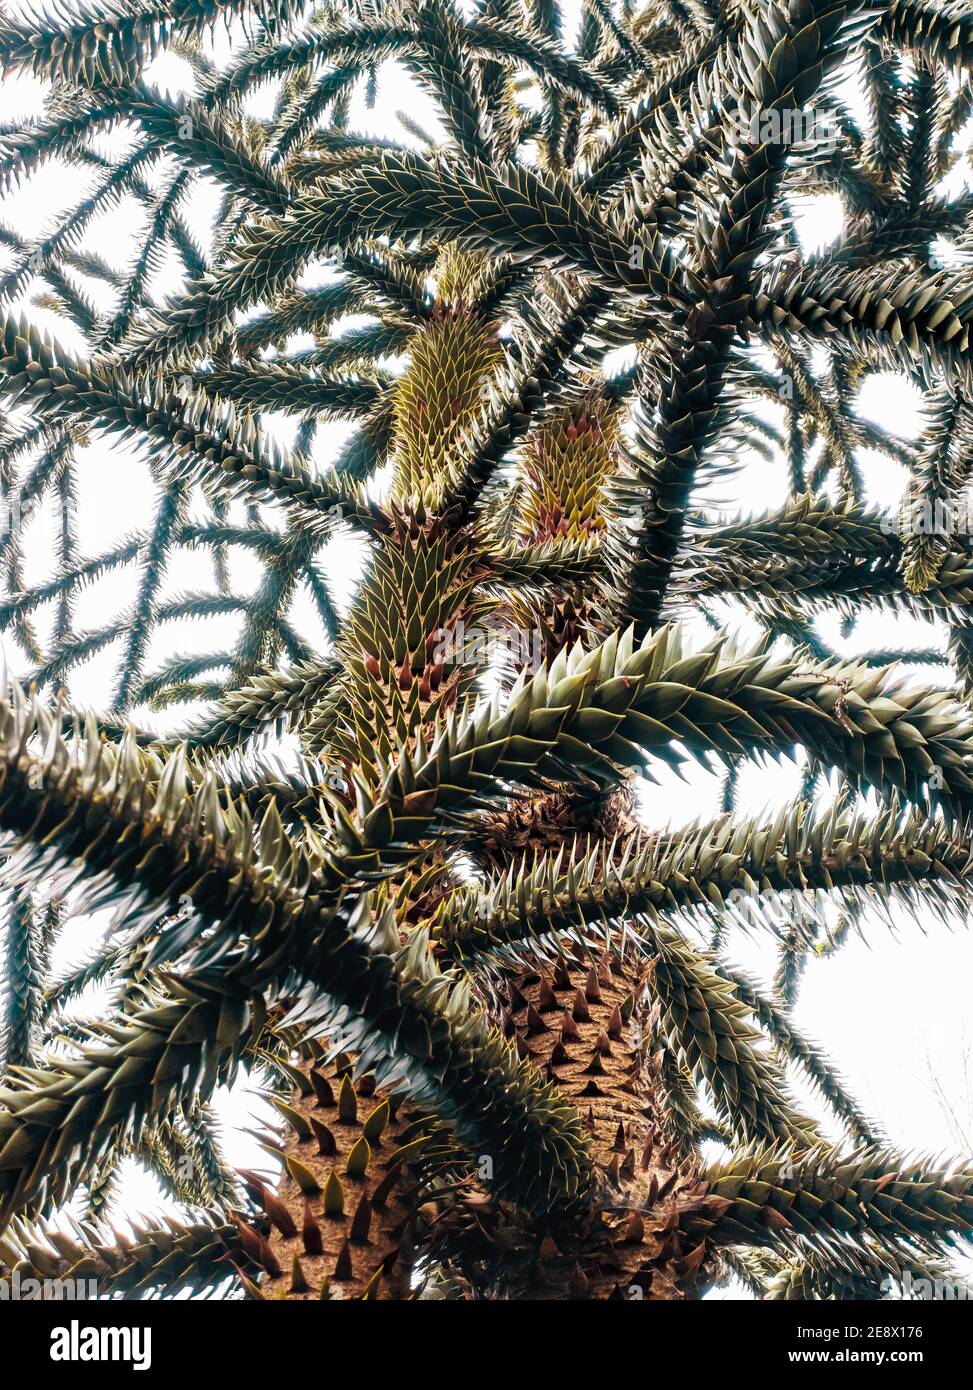 El árbol del rompecabezas del mono, (Araucaria Araucana), también llamado pino chileno, árbol de la cola del mono. Fondo blanco Foto de stock